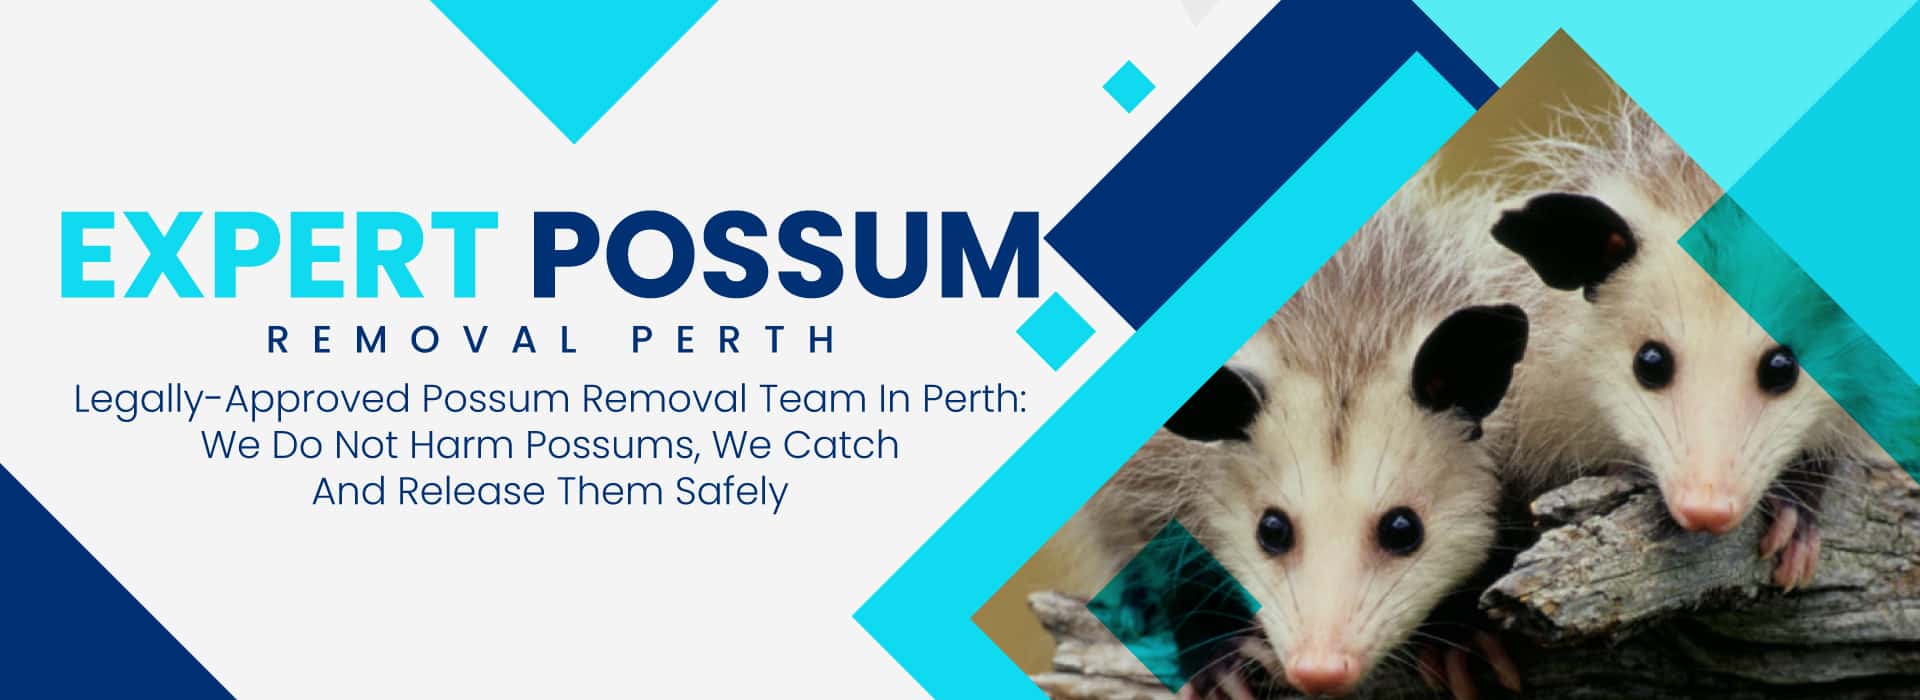 possum removal perth